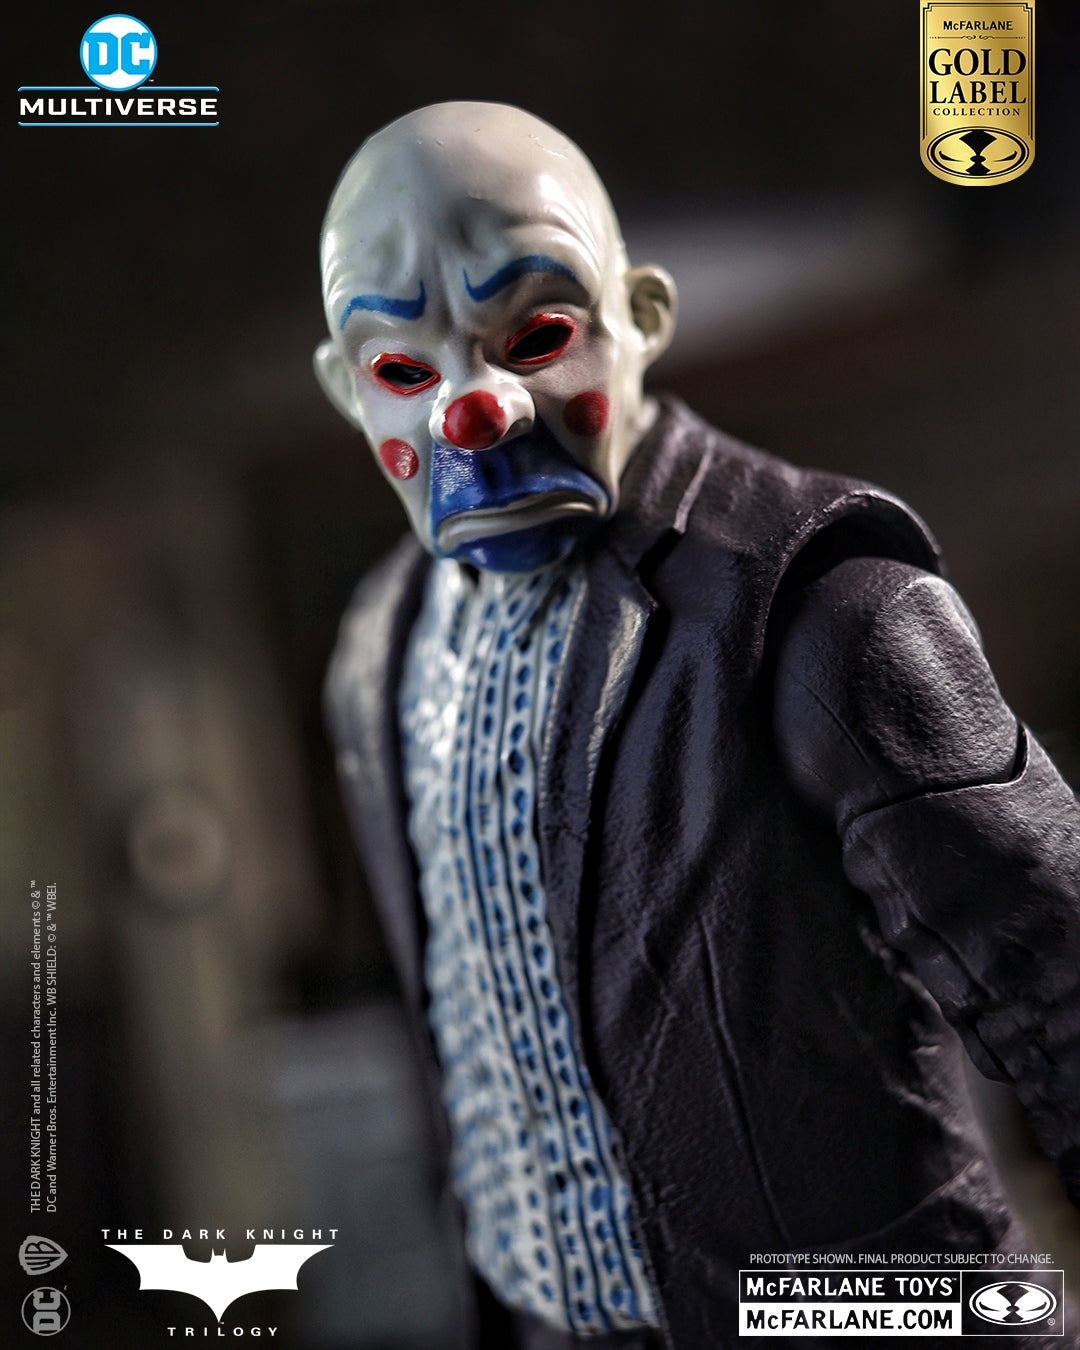 DC Batman The Dark Knight - Joker Bank Robber McFarlane Figura de Acción